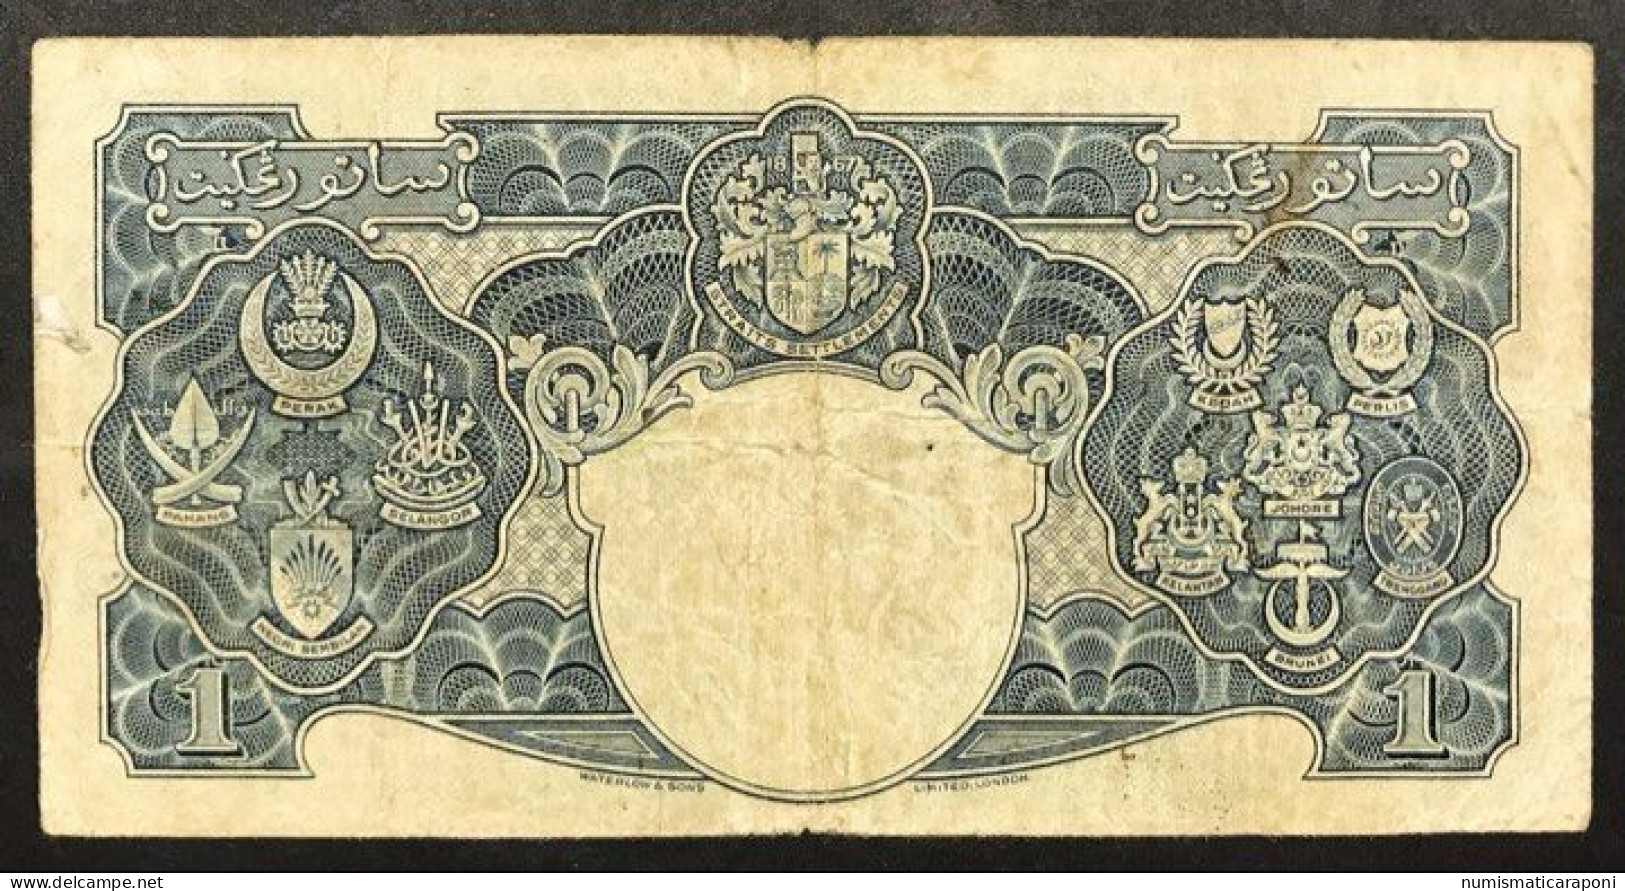 Malaya 1 Dollar 1941 Pick#11 LOTTO.369 - Malasia